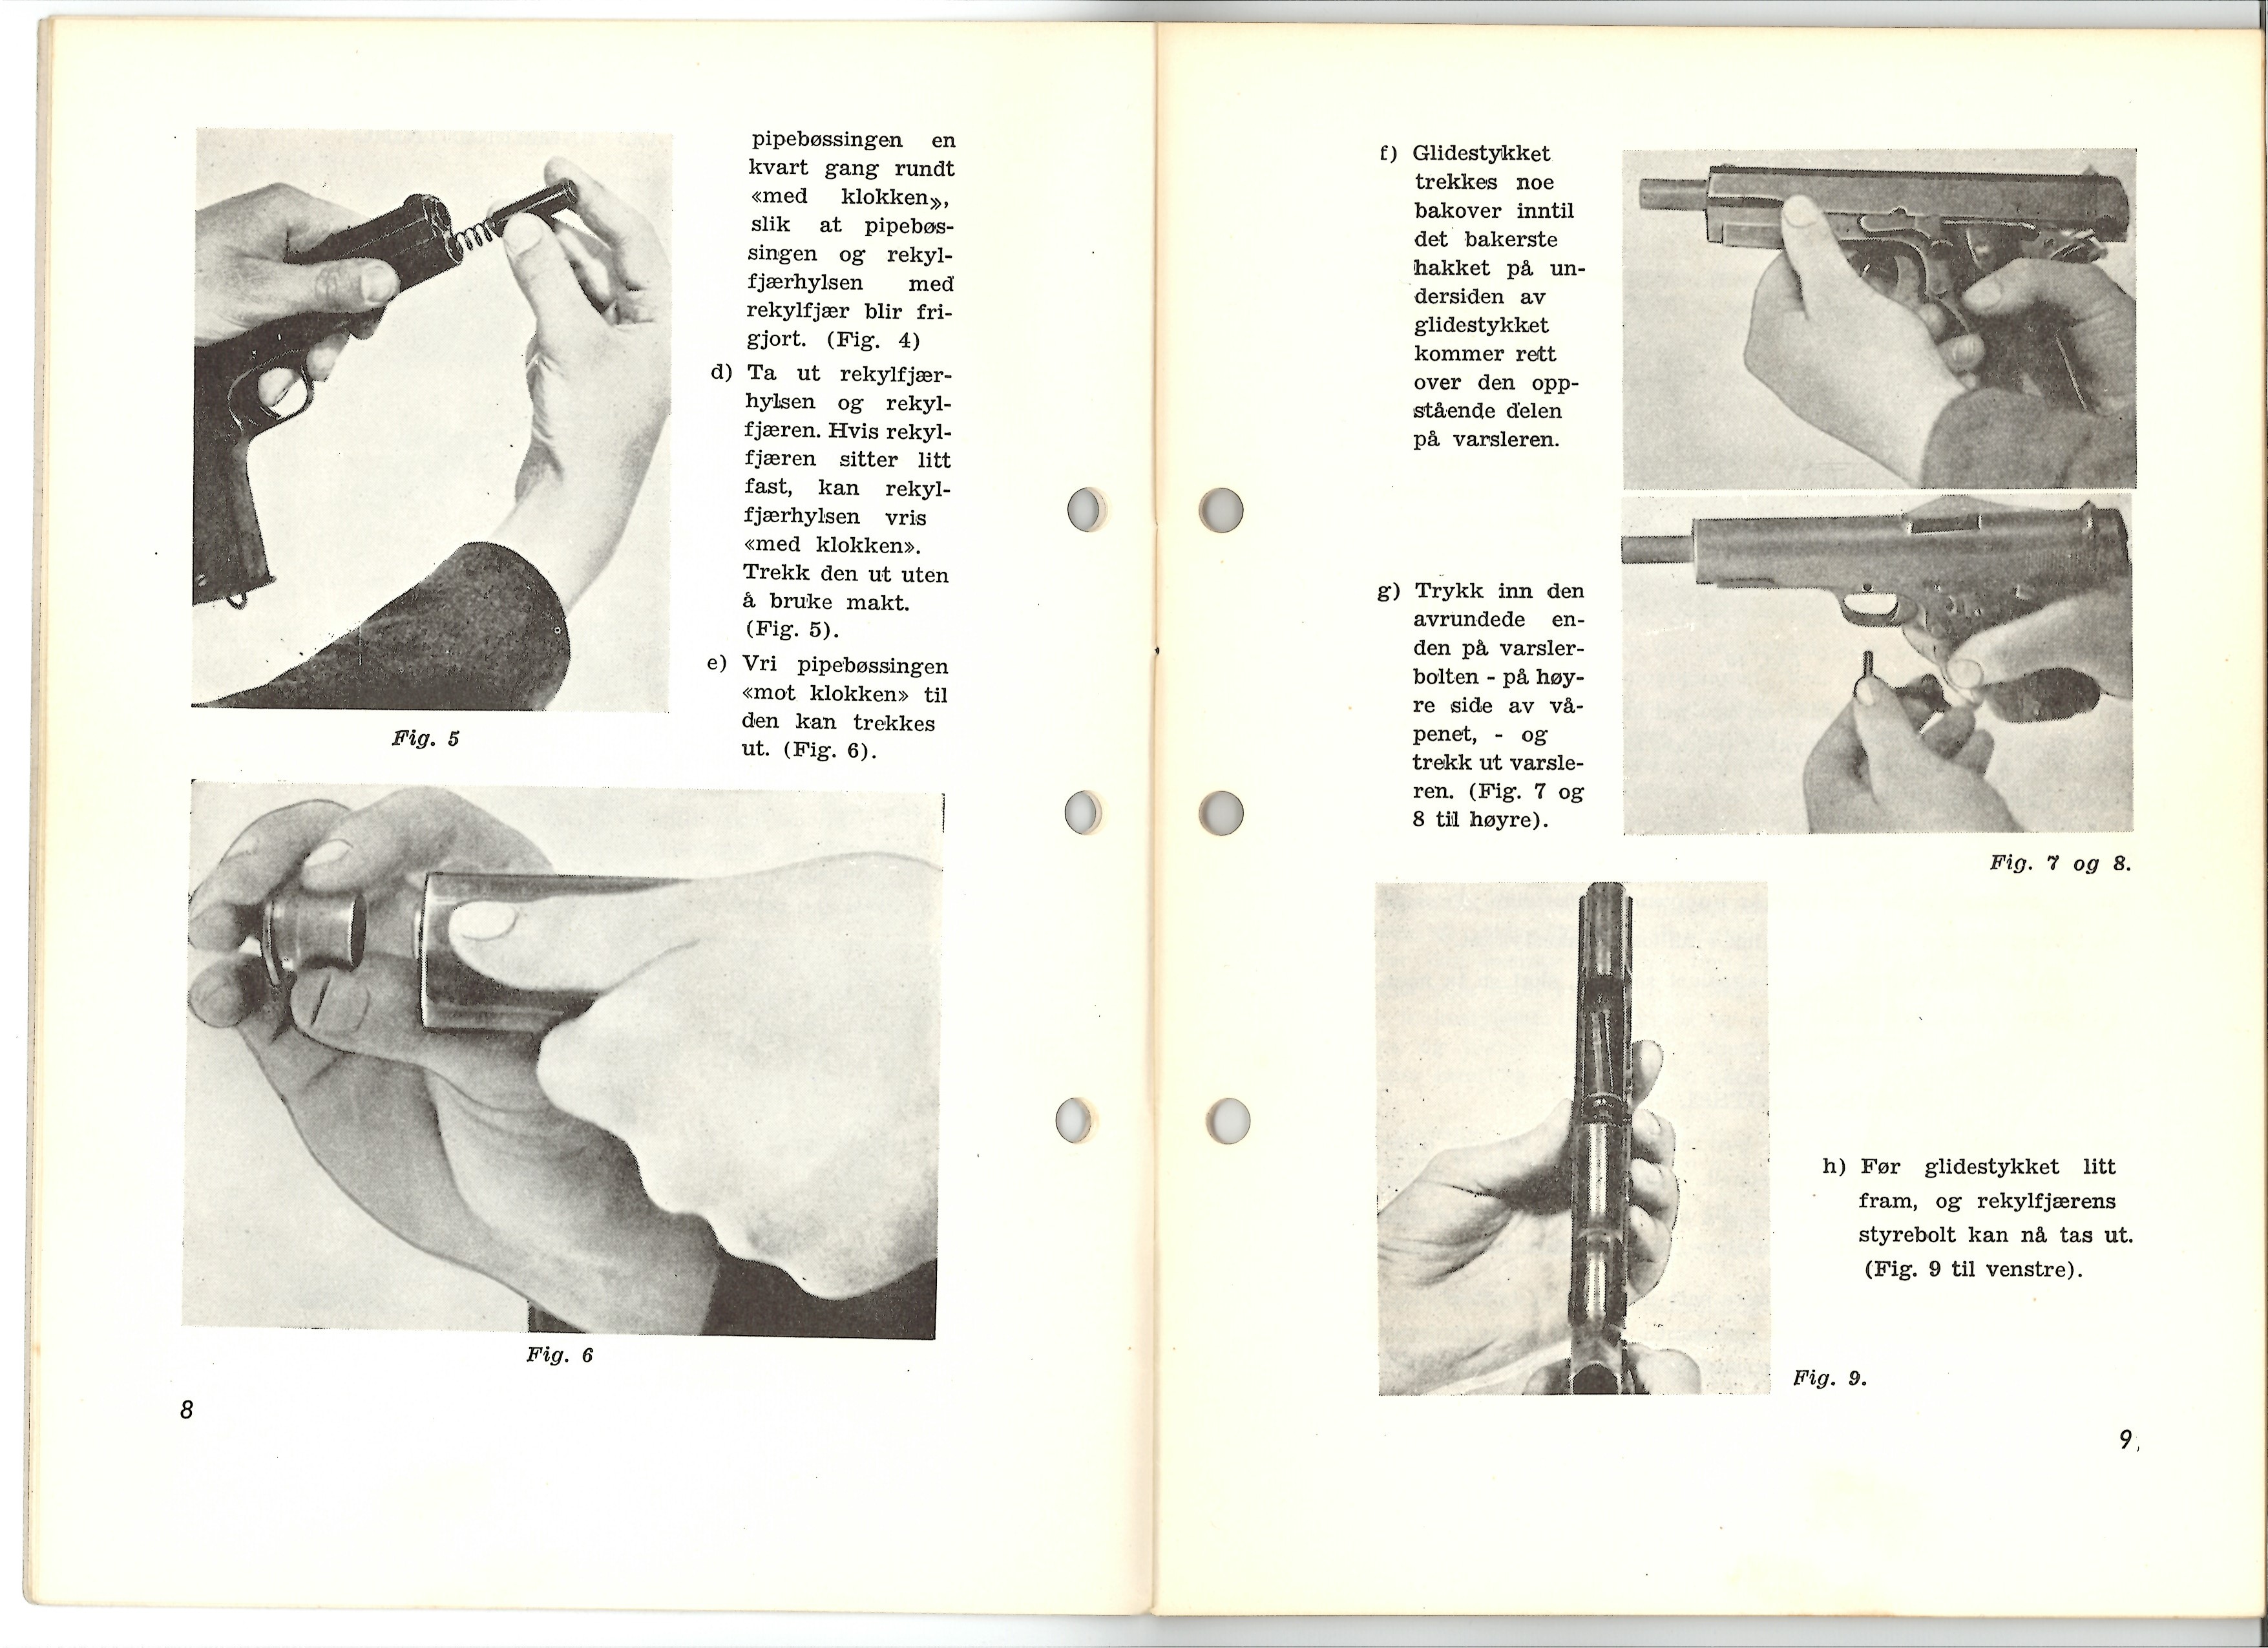 ./doc/reglement/M1914/Colt-M1914-Instruks-for-skyting-1956-6.jpg